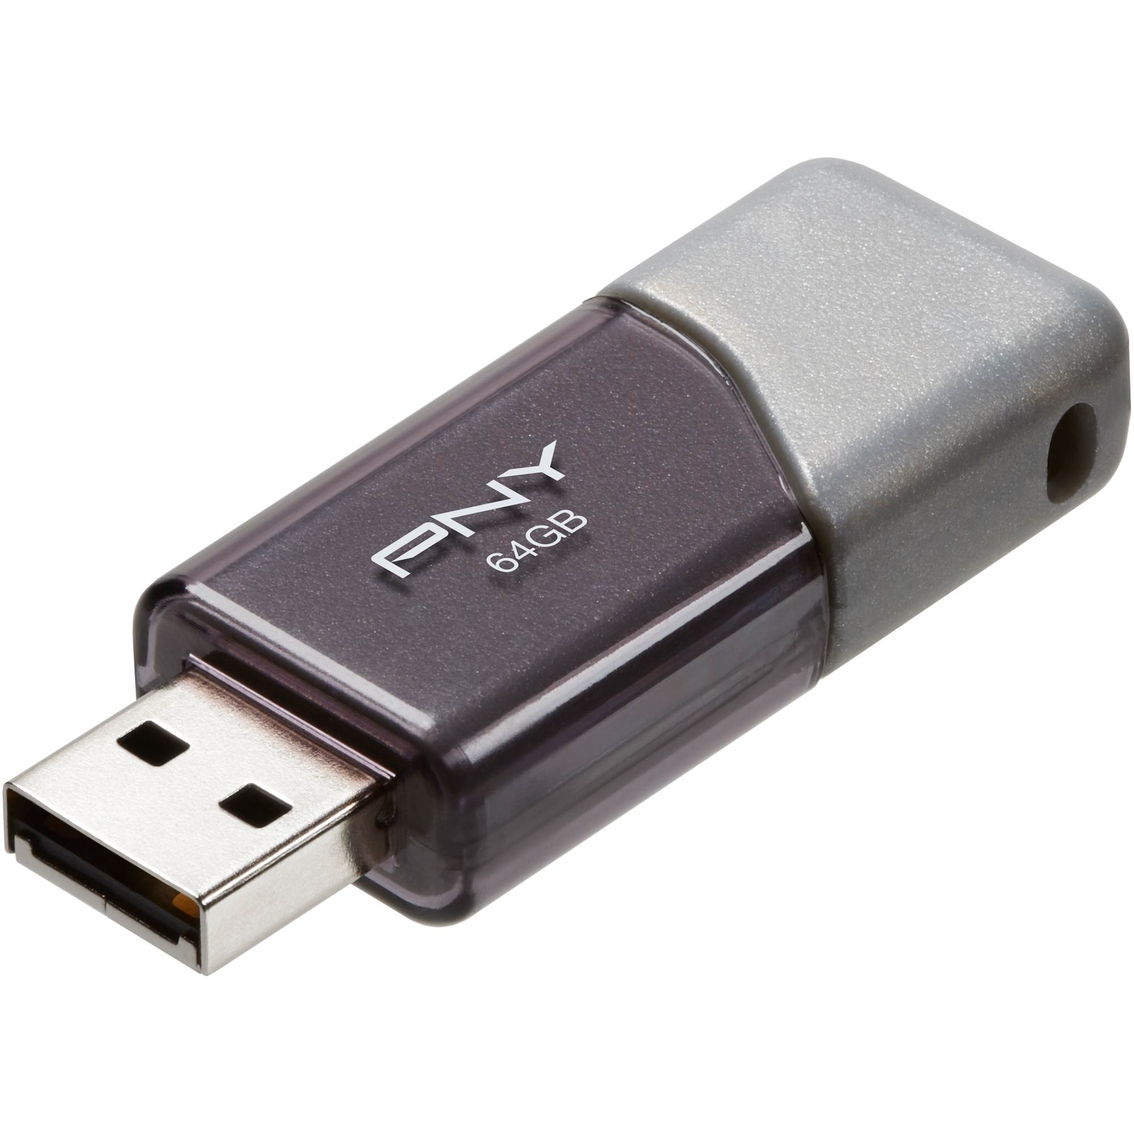 PNY 64GB Turbo USB 2.0 Flash Drive 